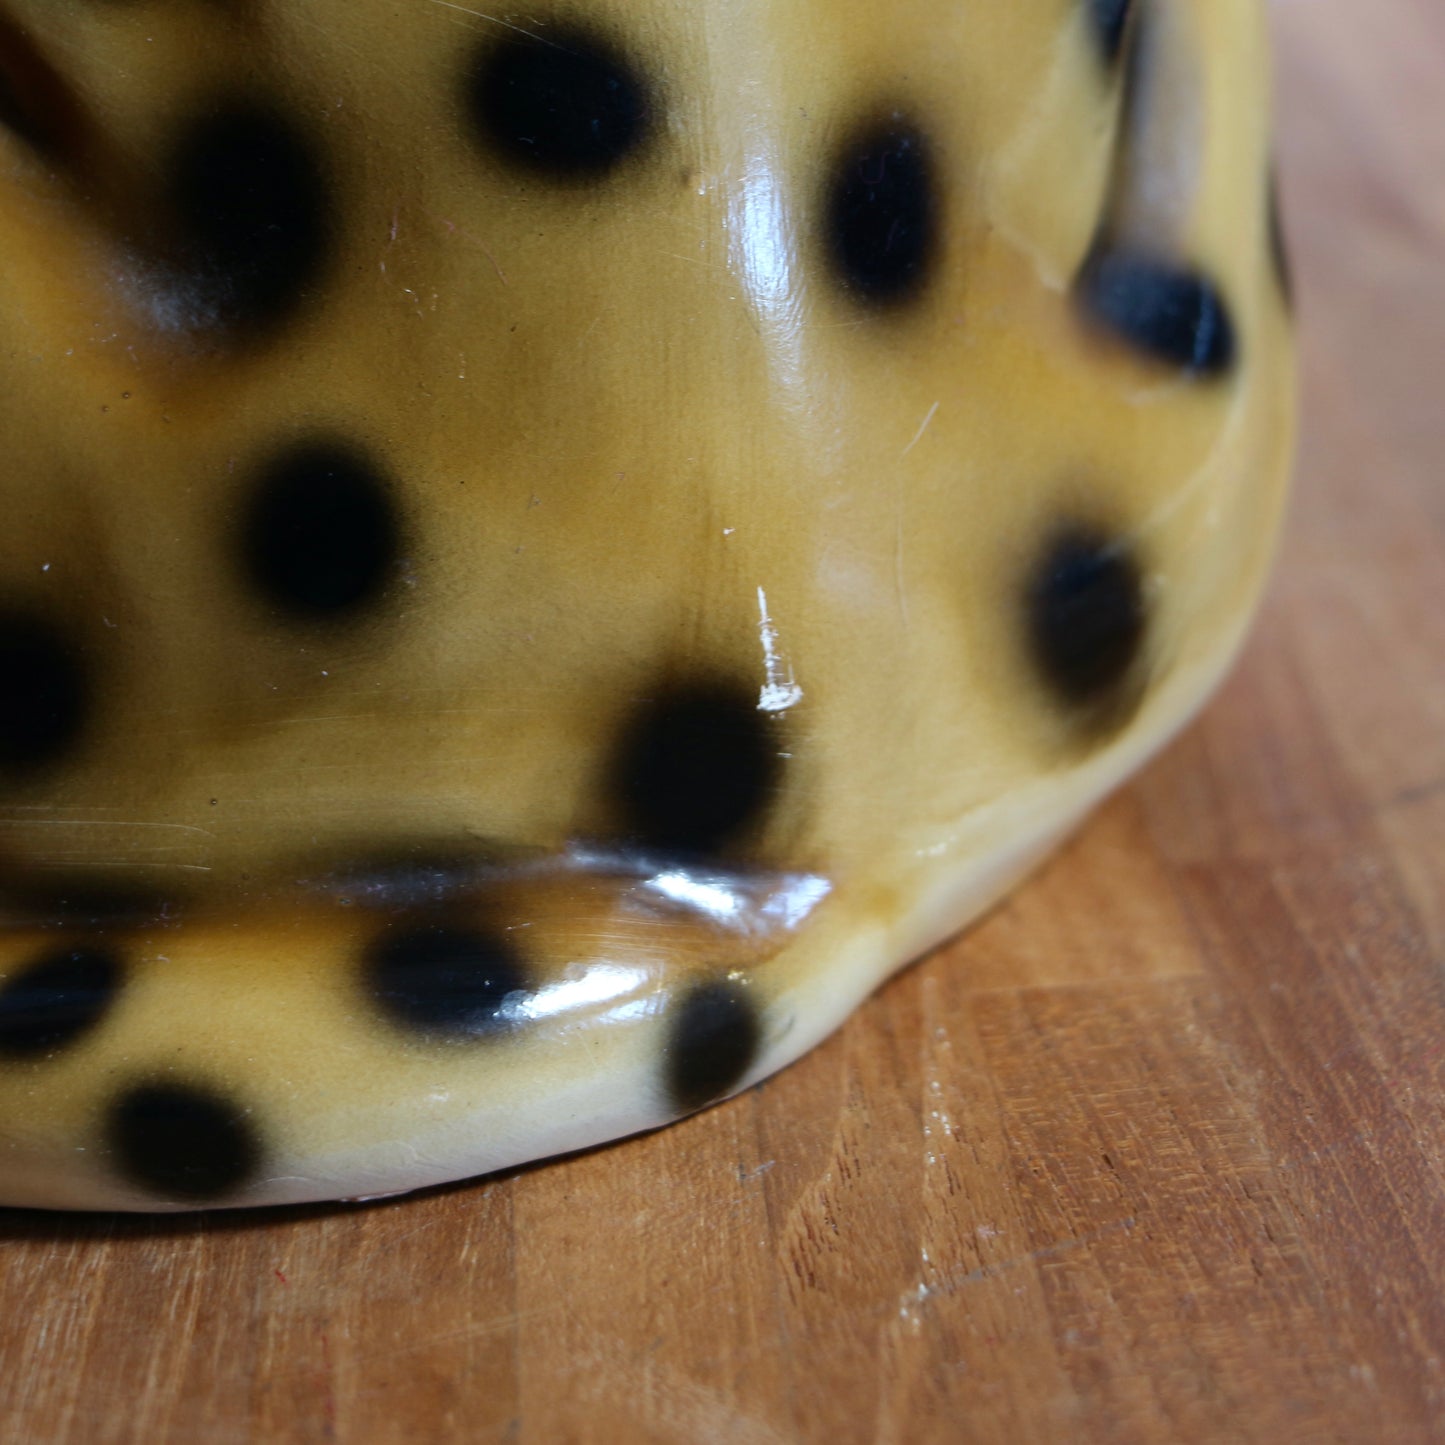 Leopard en céramique vintage